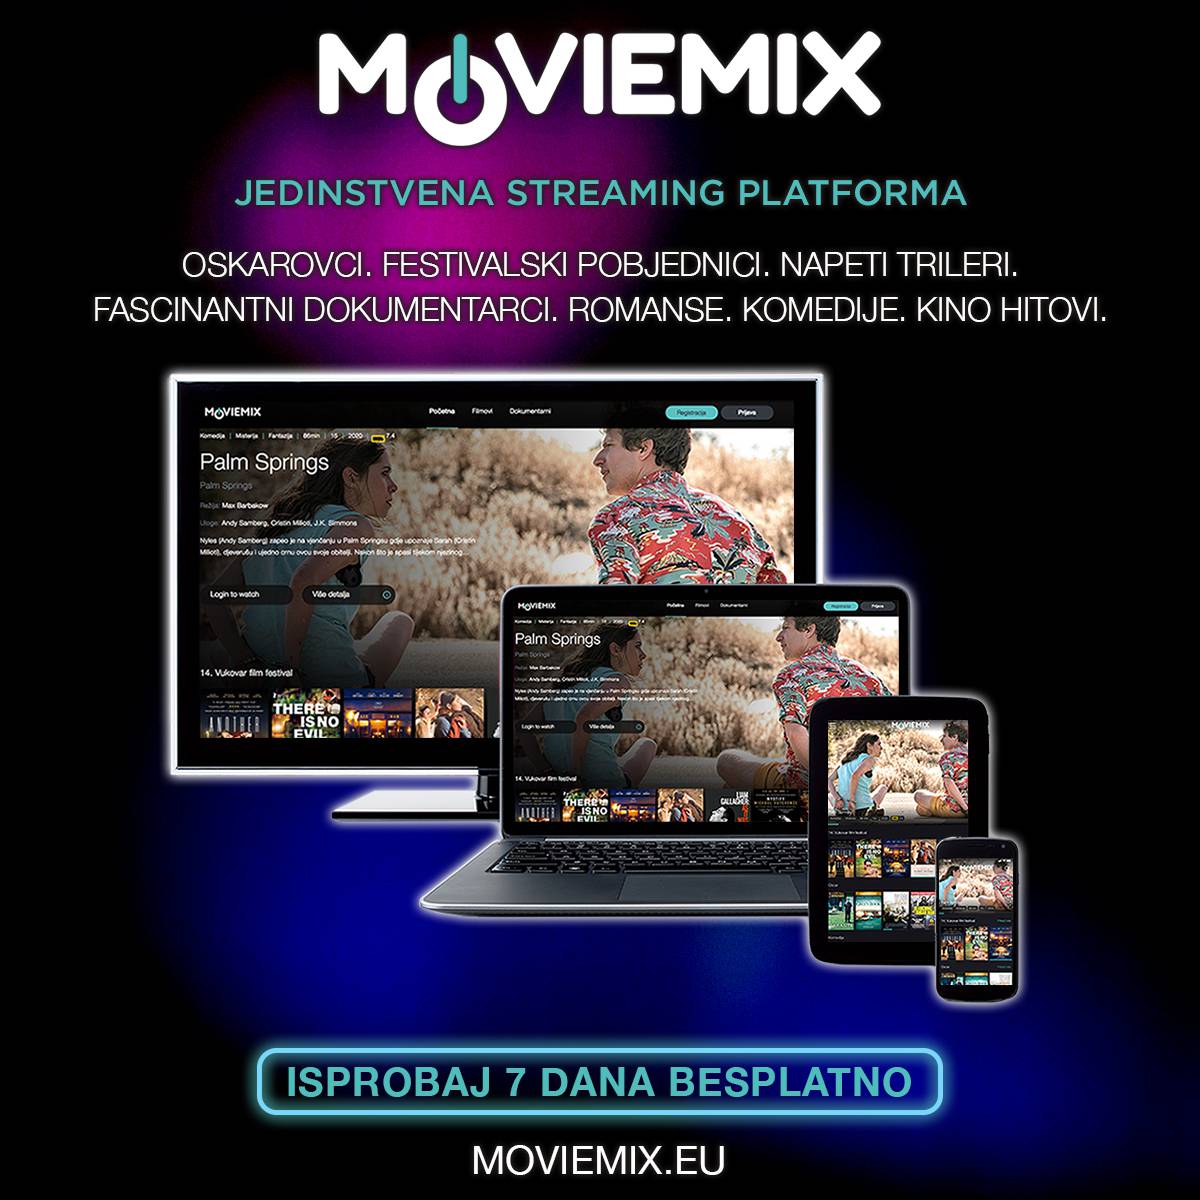 Moviemix - Potpuno drugačija filmska platforma!